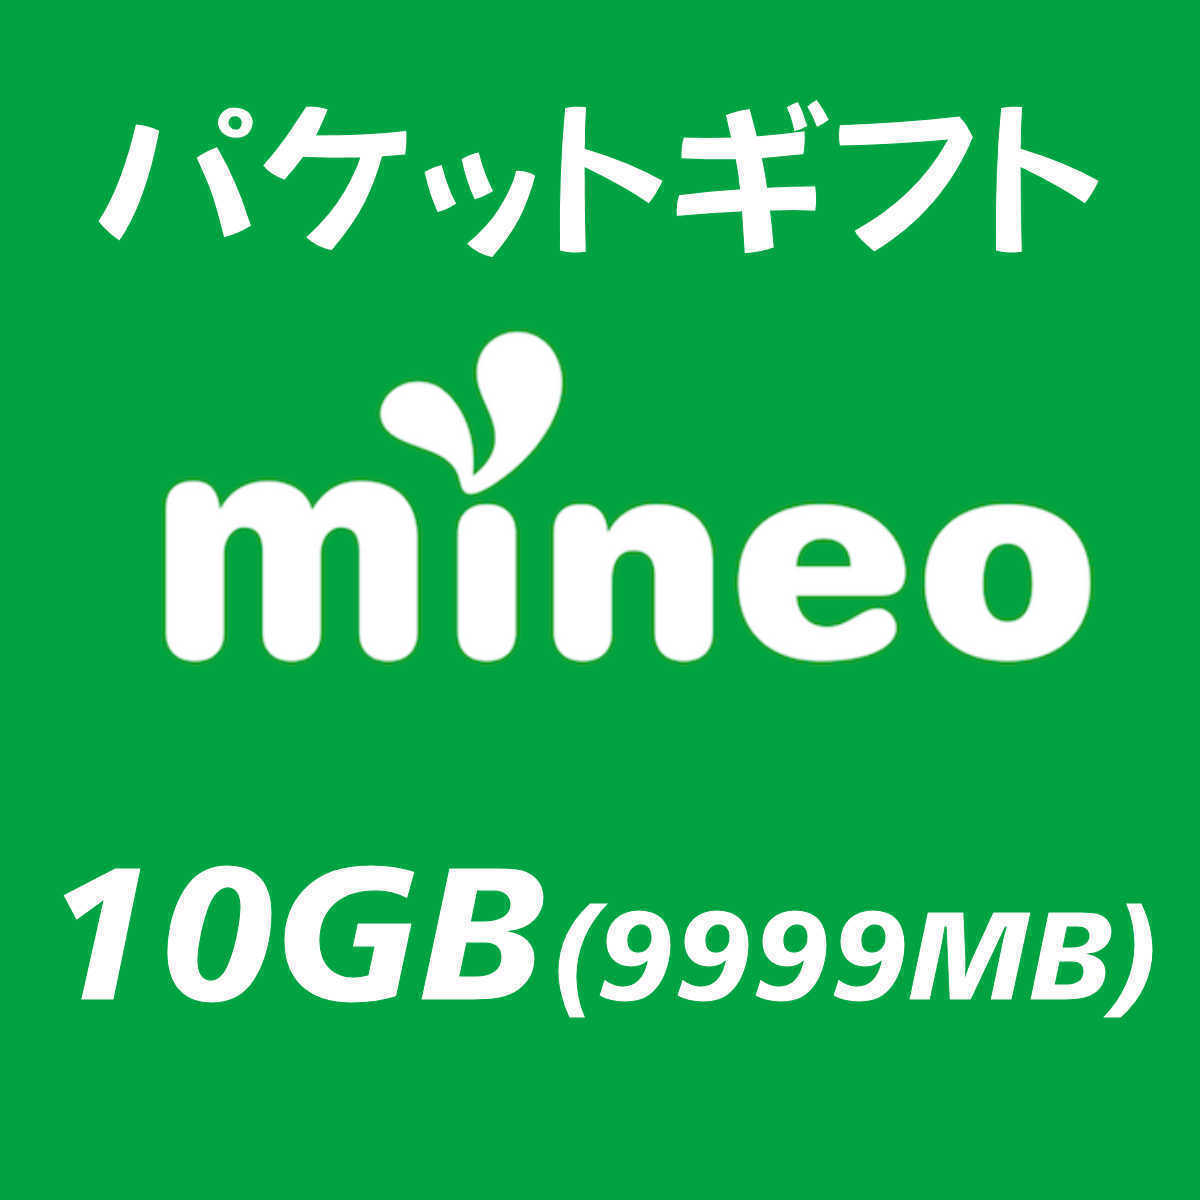 10GB(9999MB) マイネオ パケットギフト mineo ④の画像1